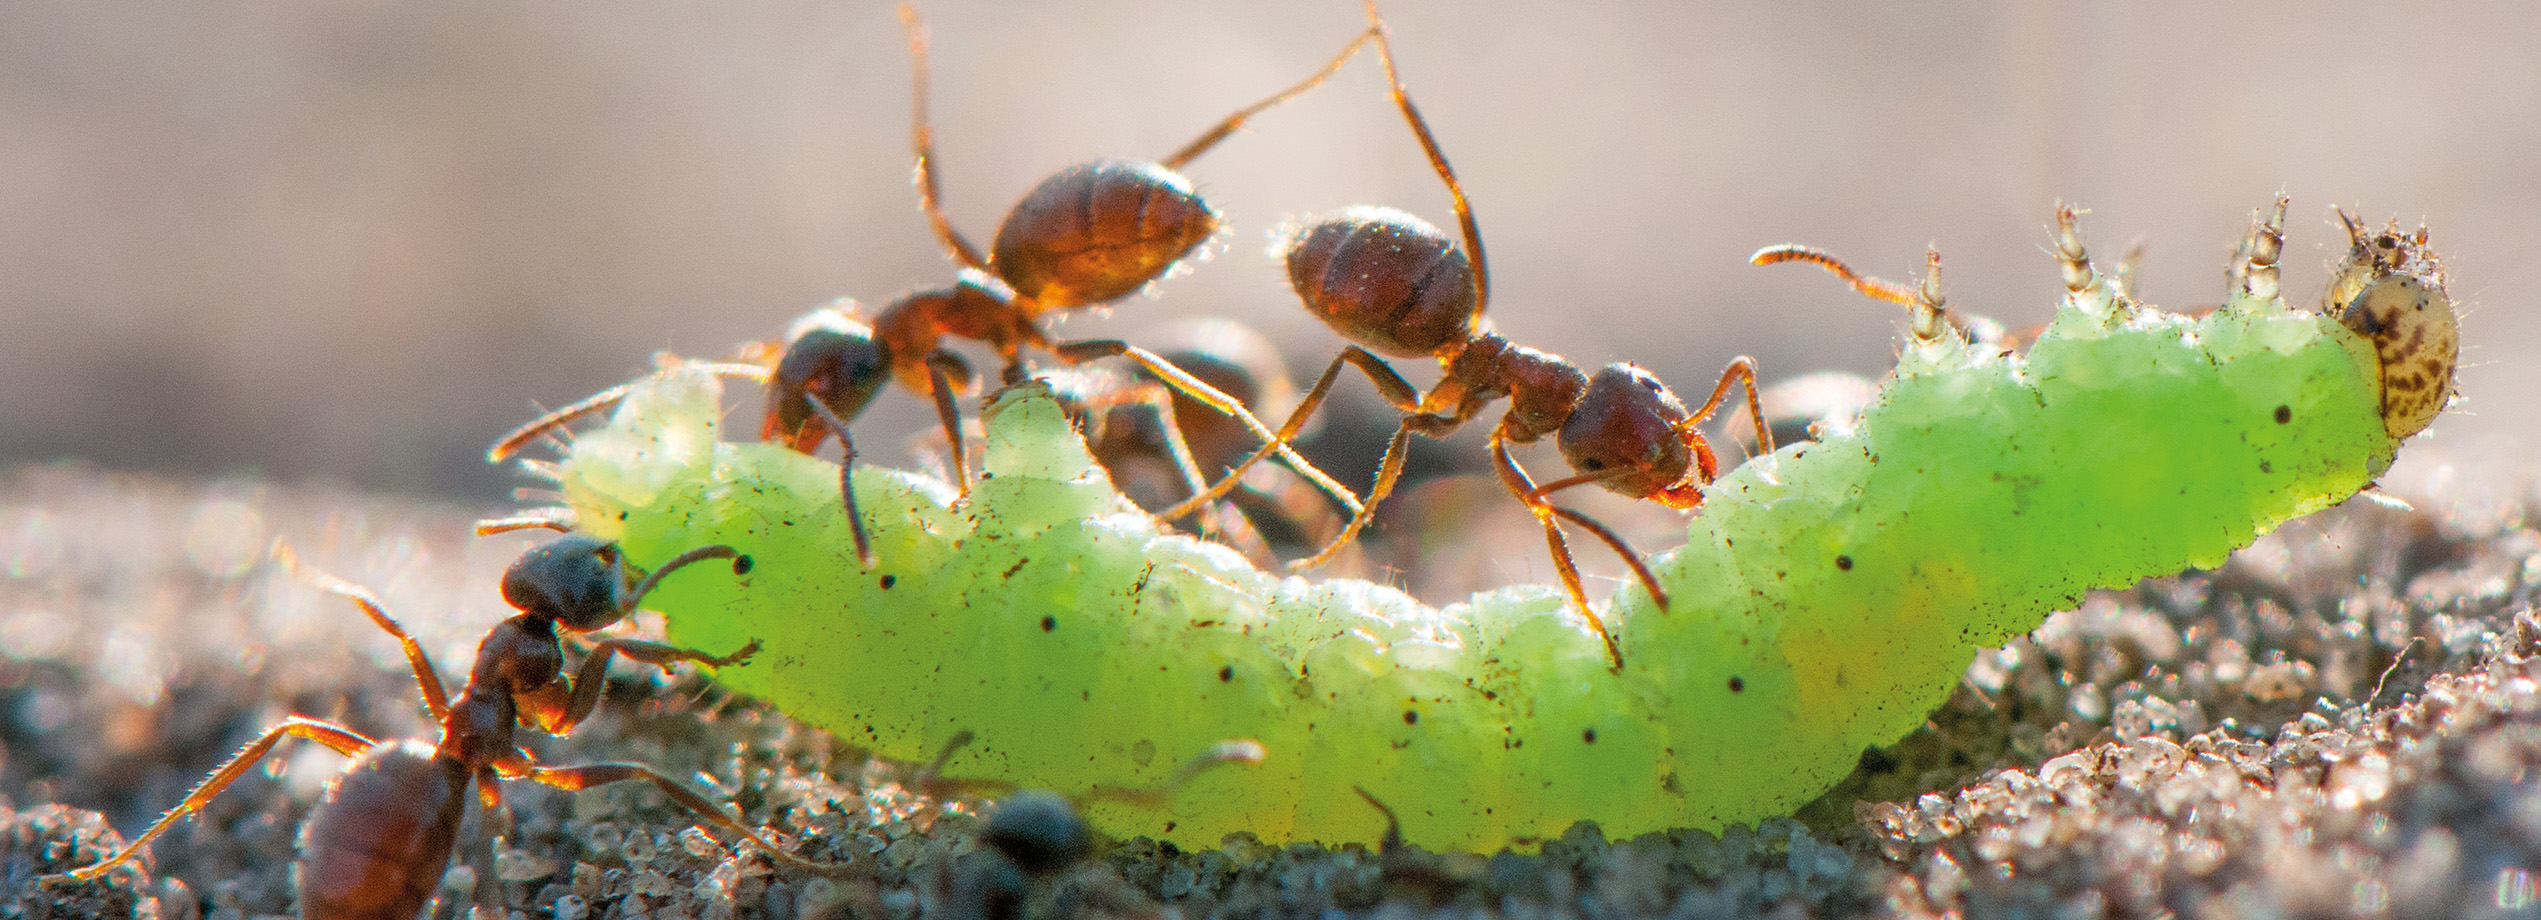 Macro photographie de fourmis rouges attaquant une chenille verte sur un sol sableux. Capturée par Edwin Giesbers, cette image illustre le comportement prédateur des fourmis et les interactions entre insecte. Magazine de photographie nature